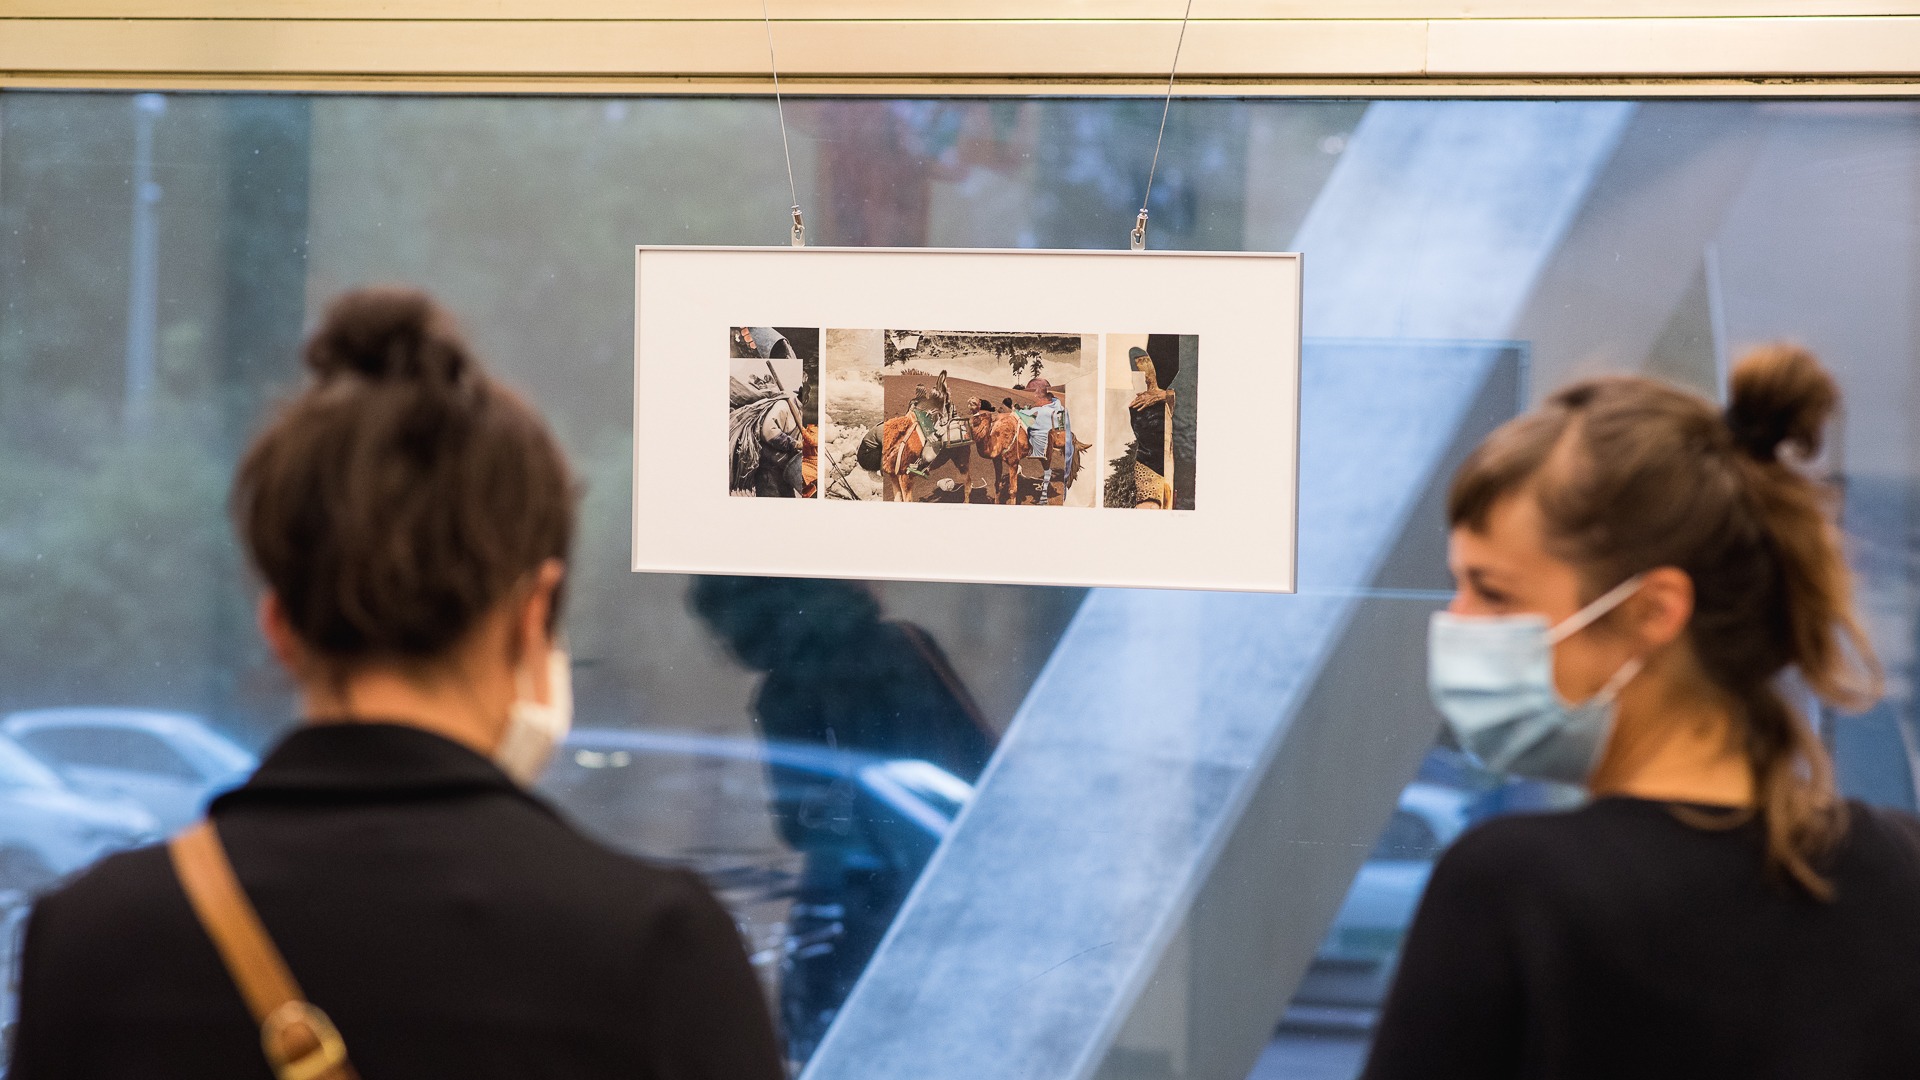 Ausstellungsansicht Kunstpreis Münzenberg Forum Berlin, 1. Preis in der Kategorie Collage. 2020
Foto: Andreas Domma